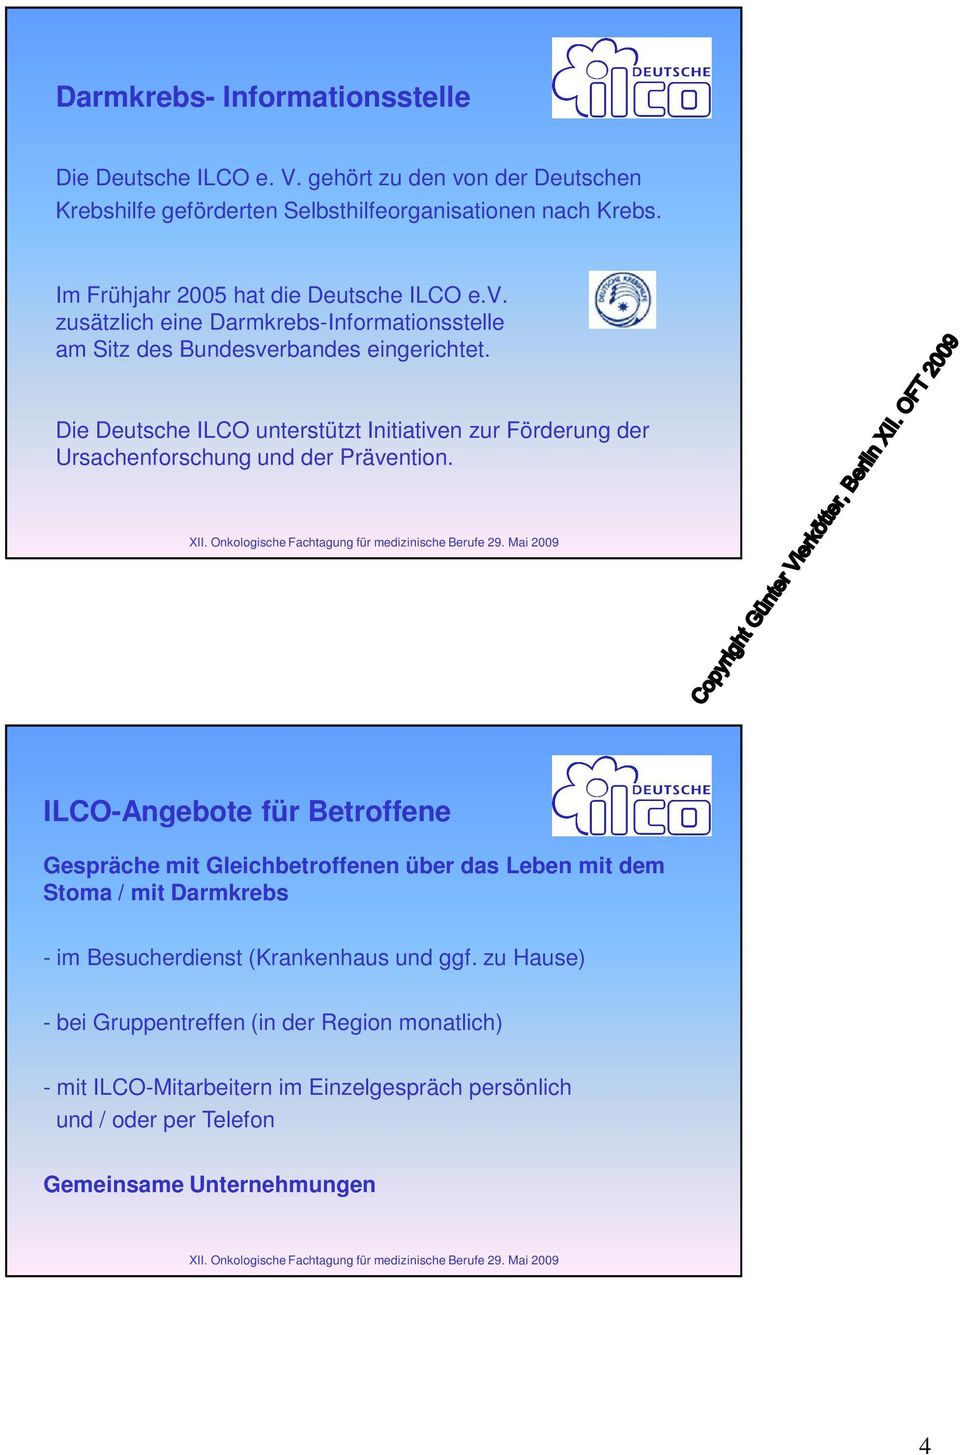 Die Deutsche ILCO unterstützt Initiativen zur Förderung der Ursachenforschung und der Prävention.